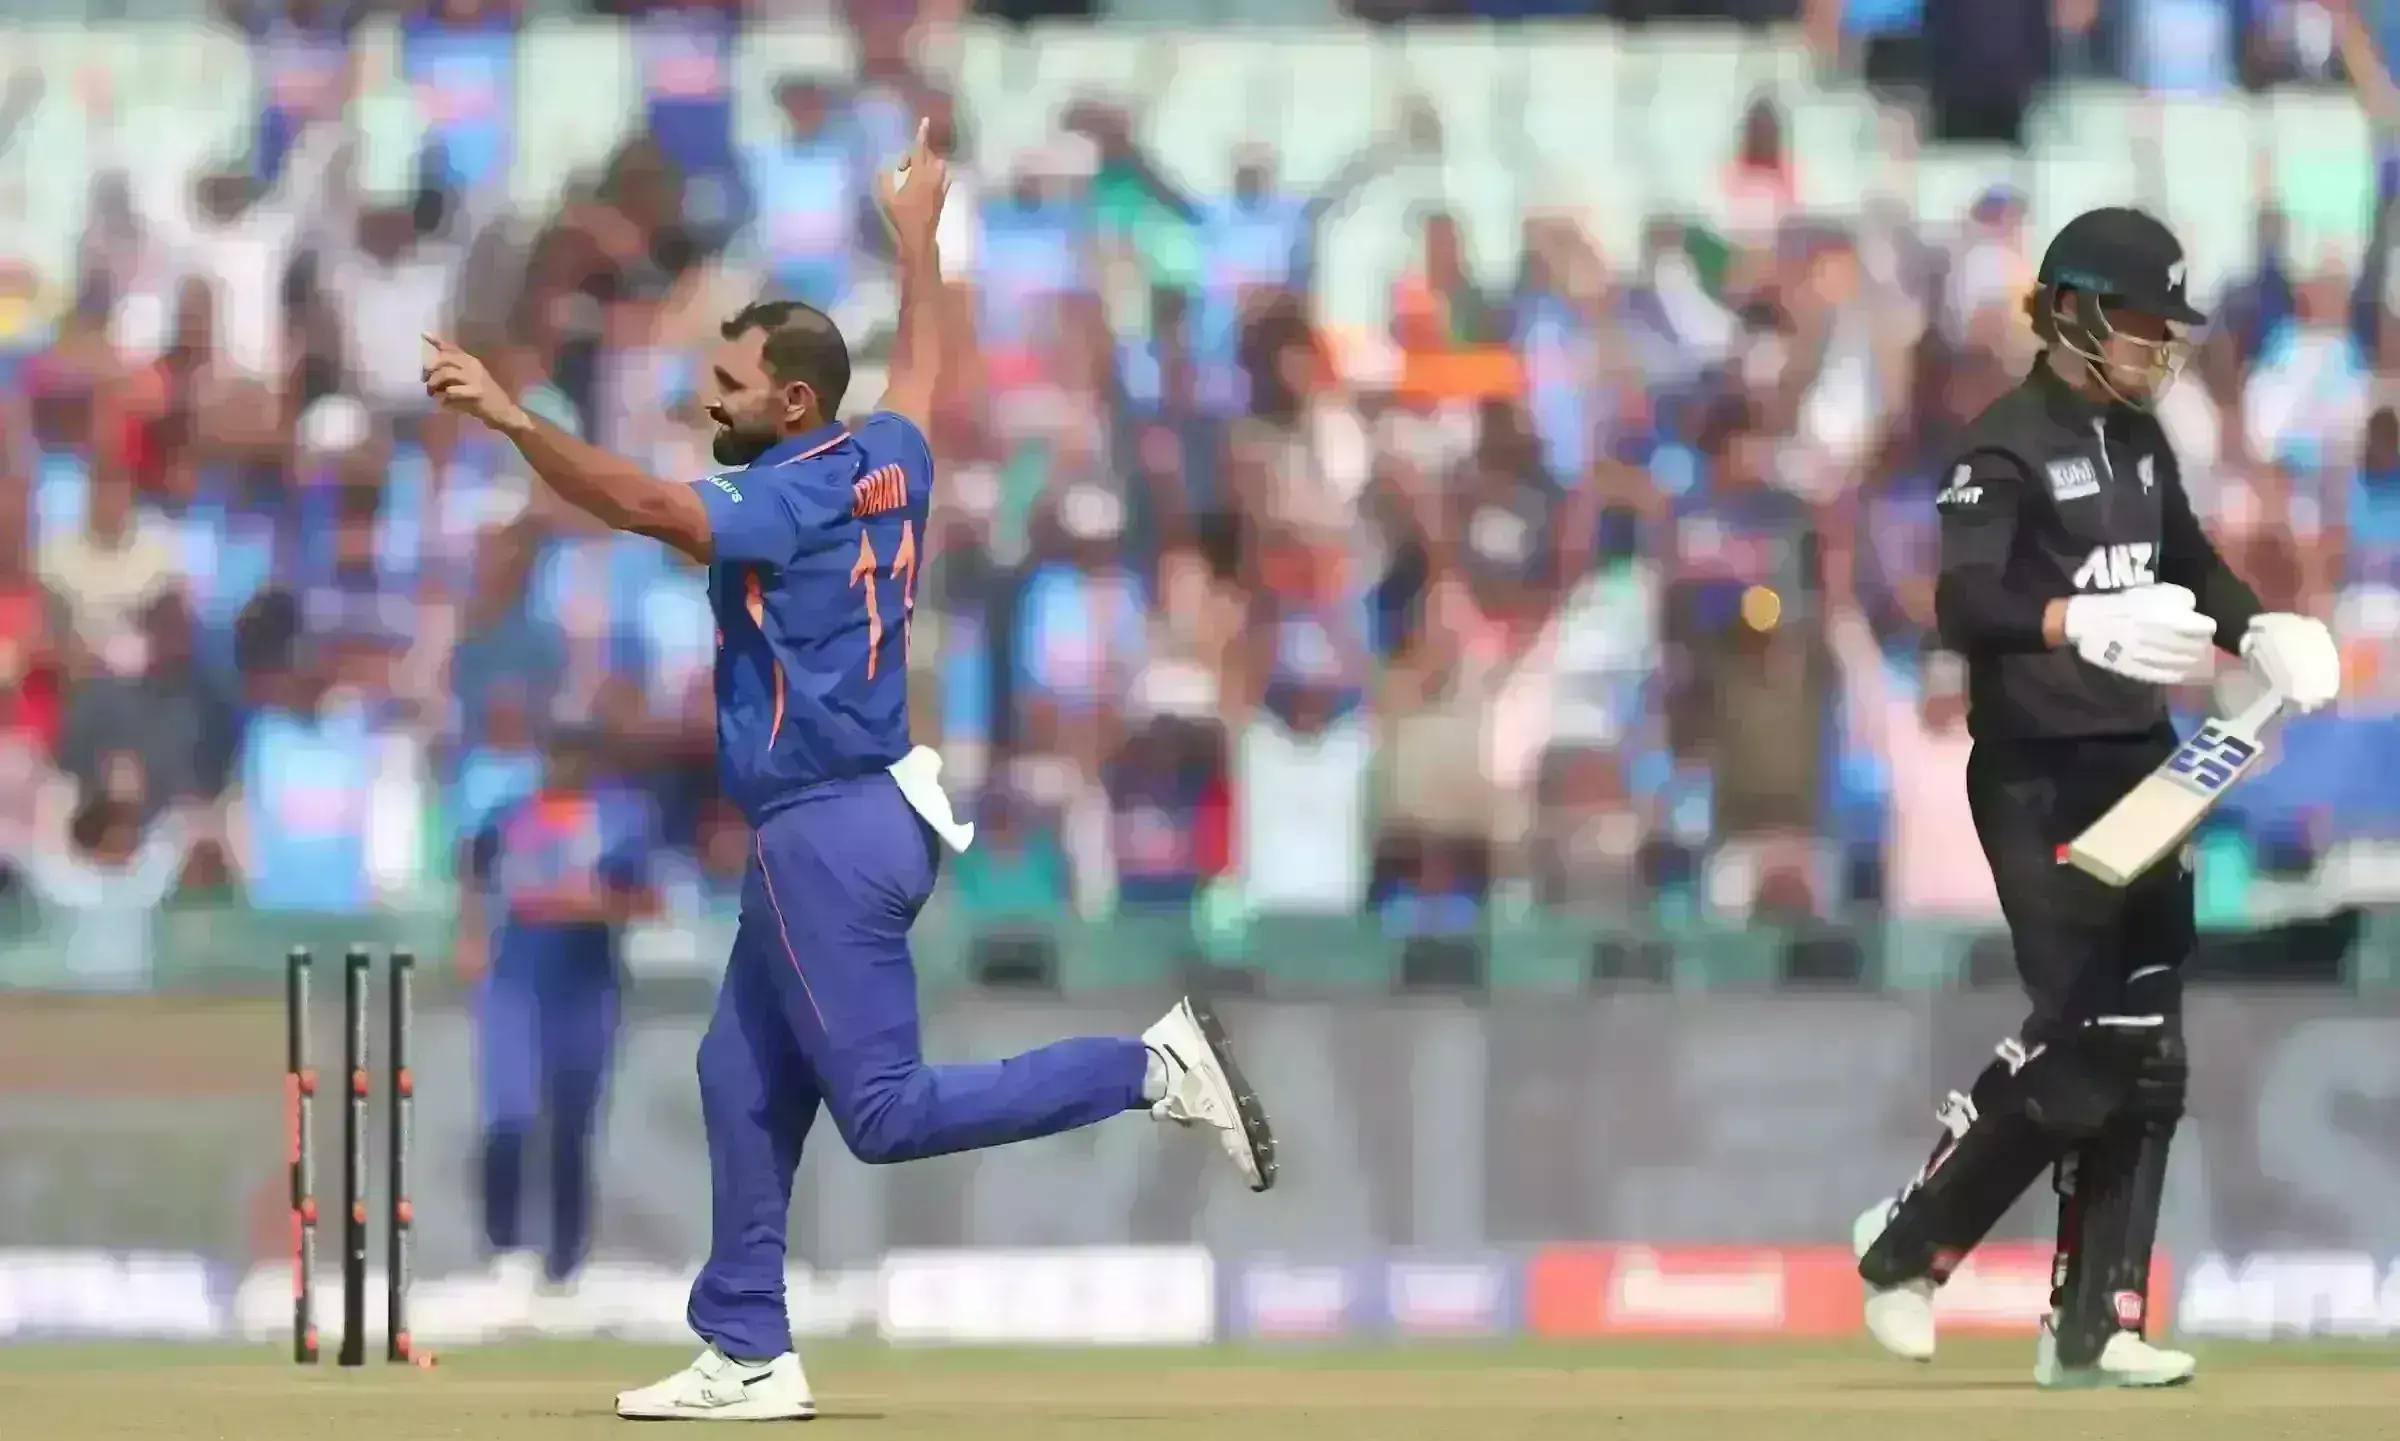 IND vs NZ : भारत ने न्यूजीलैंड को 8 विकेट से हराया, रोहित शर्मा ने लगाया 48वां शतक